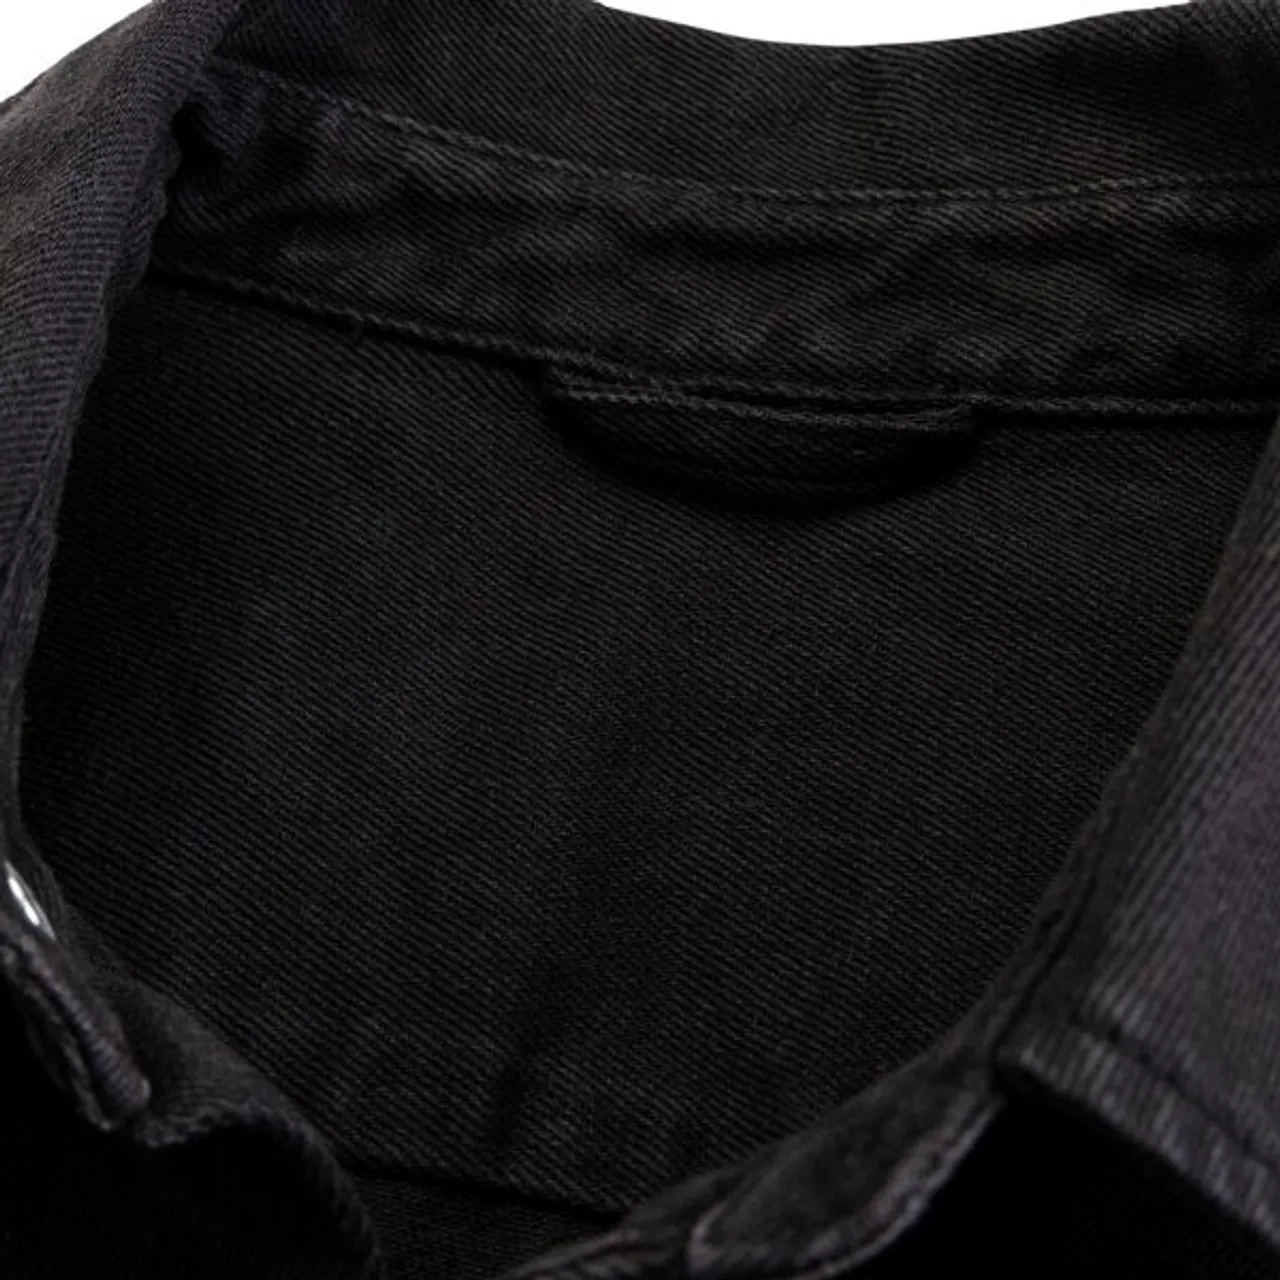 Hemdjacke JOHN DEVIN "Overshirt Regular Fit" Gr. S (44/46), schwarz Herren Jacken Langarm Outdoorhemd mit aufgesetzten Taschen aus Baumwolle